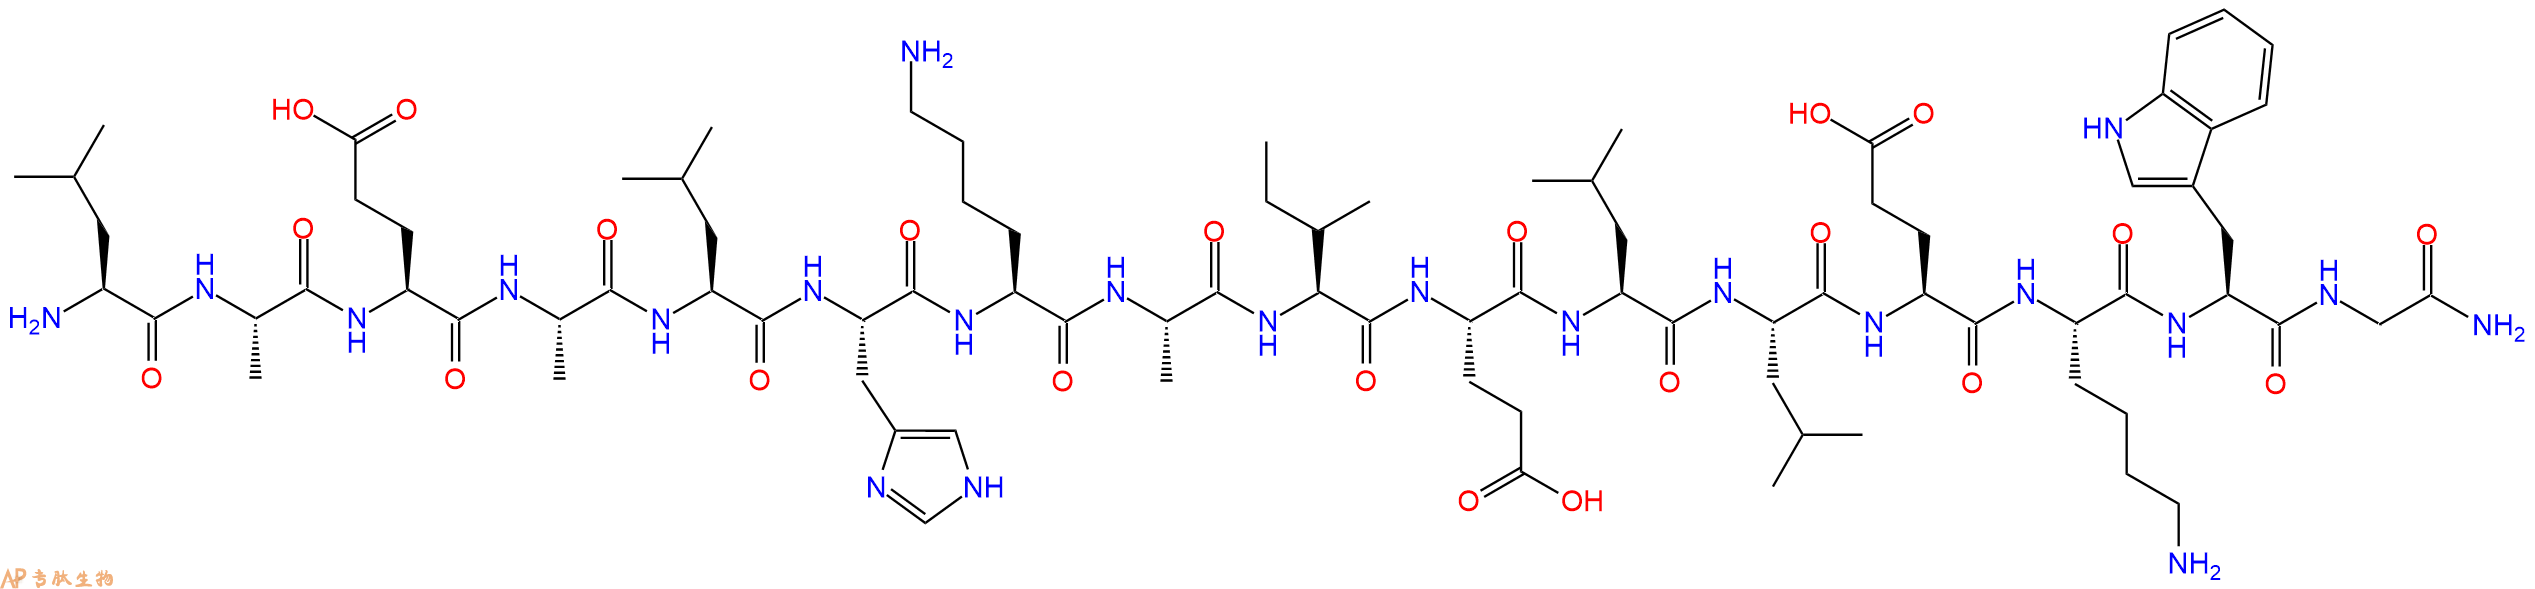 专肽生物产品十六肽LAEALHKAIELLEKWG-NH2